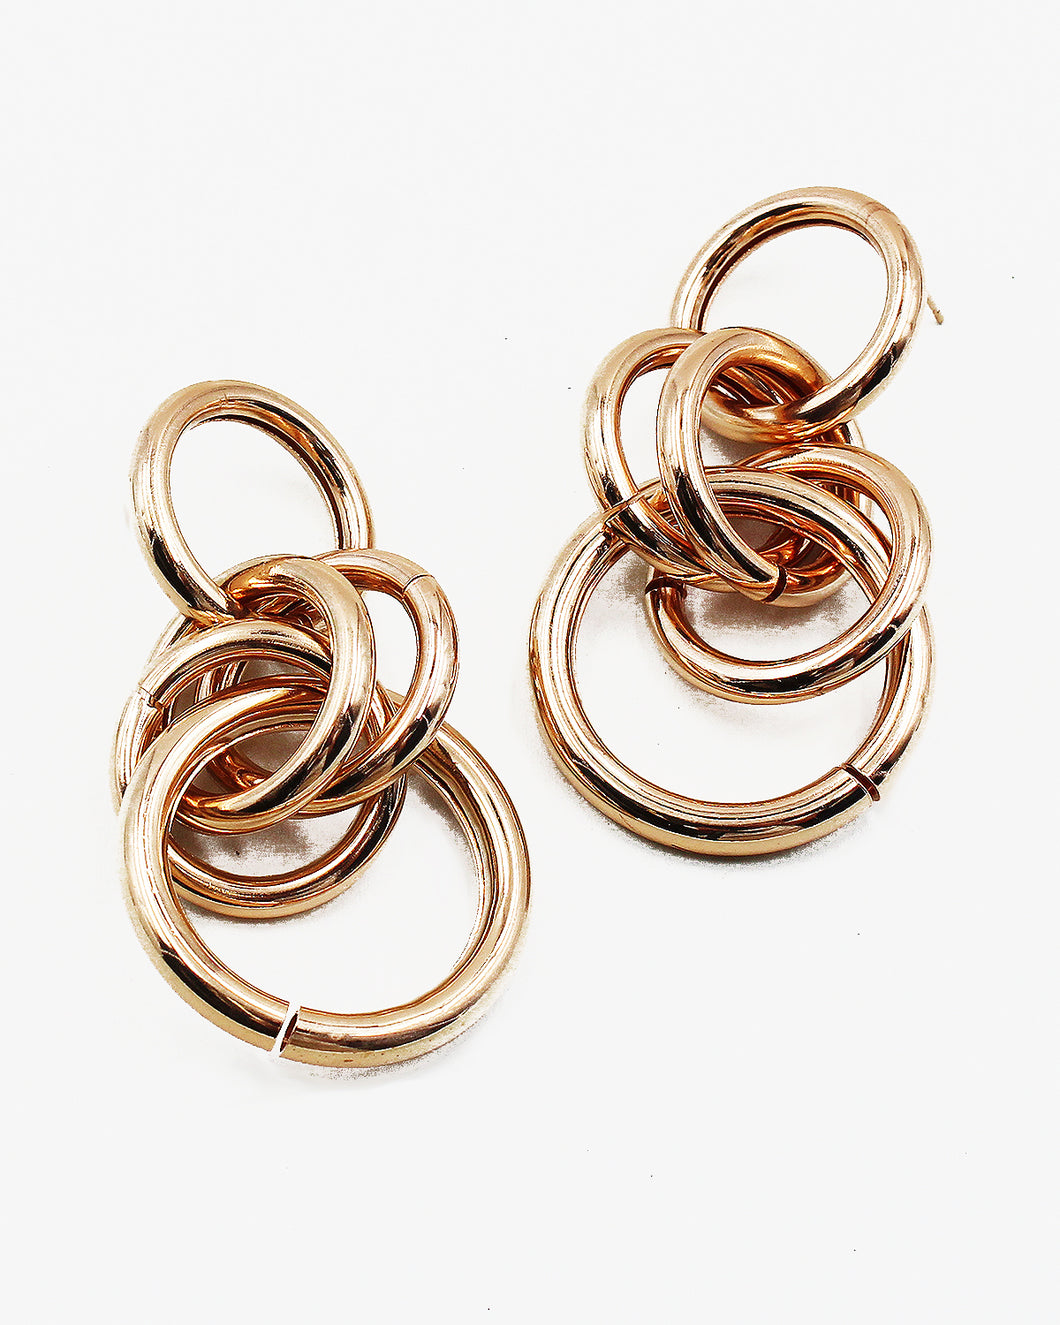 Multiple Linked Metal Ring Earrings